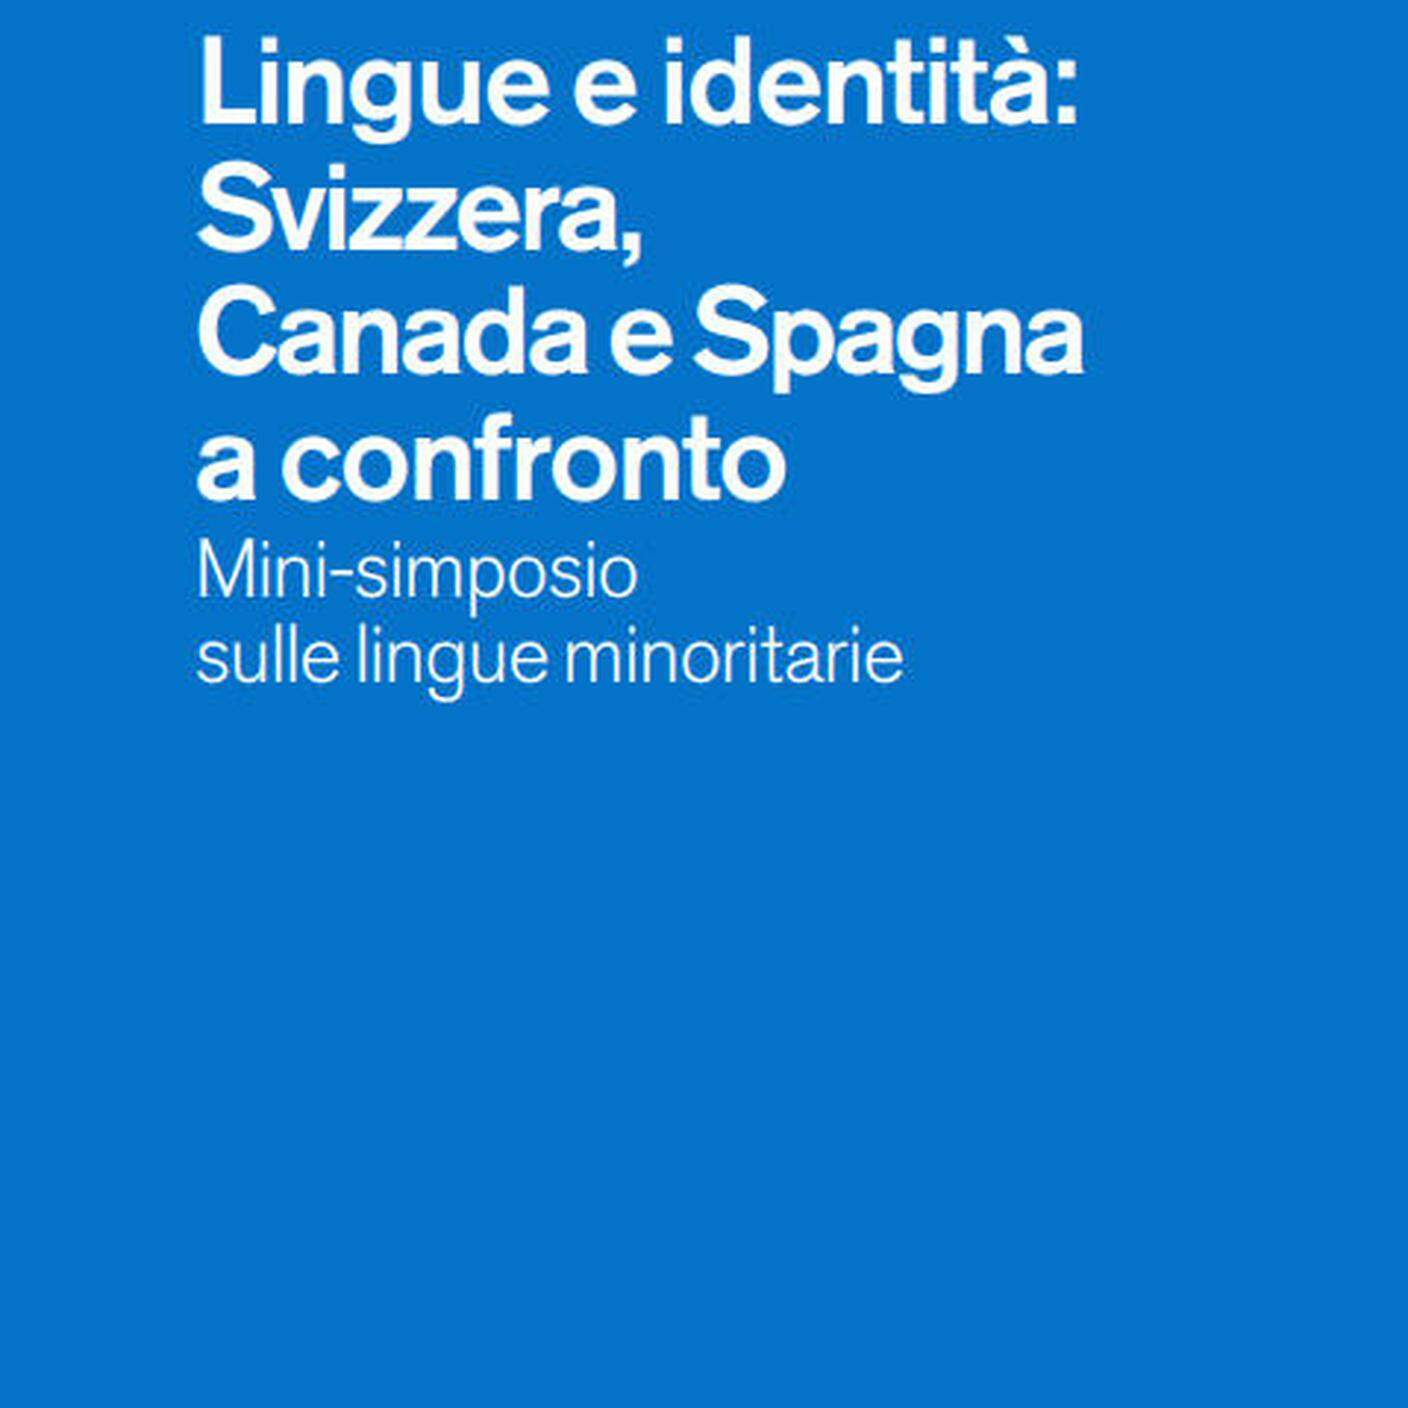 Lingue e identità: Svizzera, Canada e Spagna a confronto